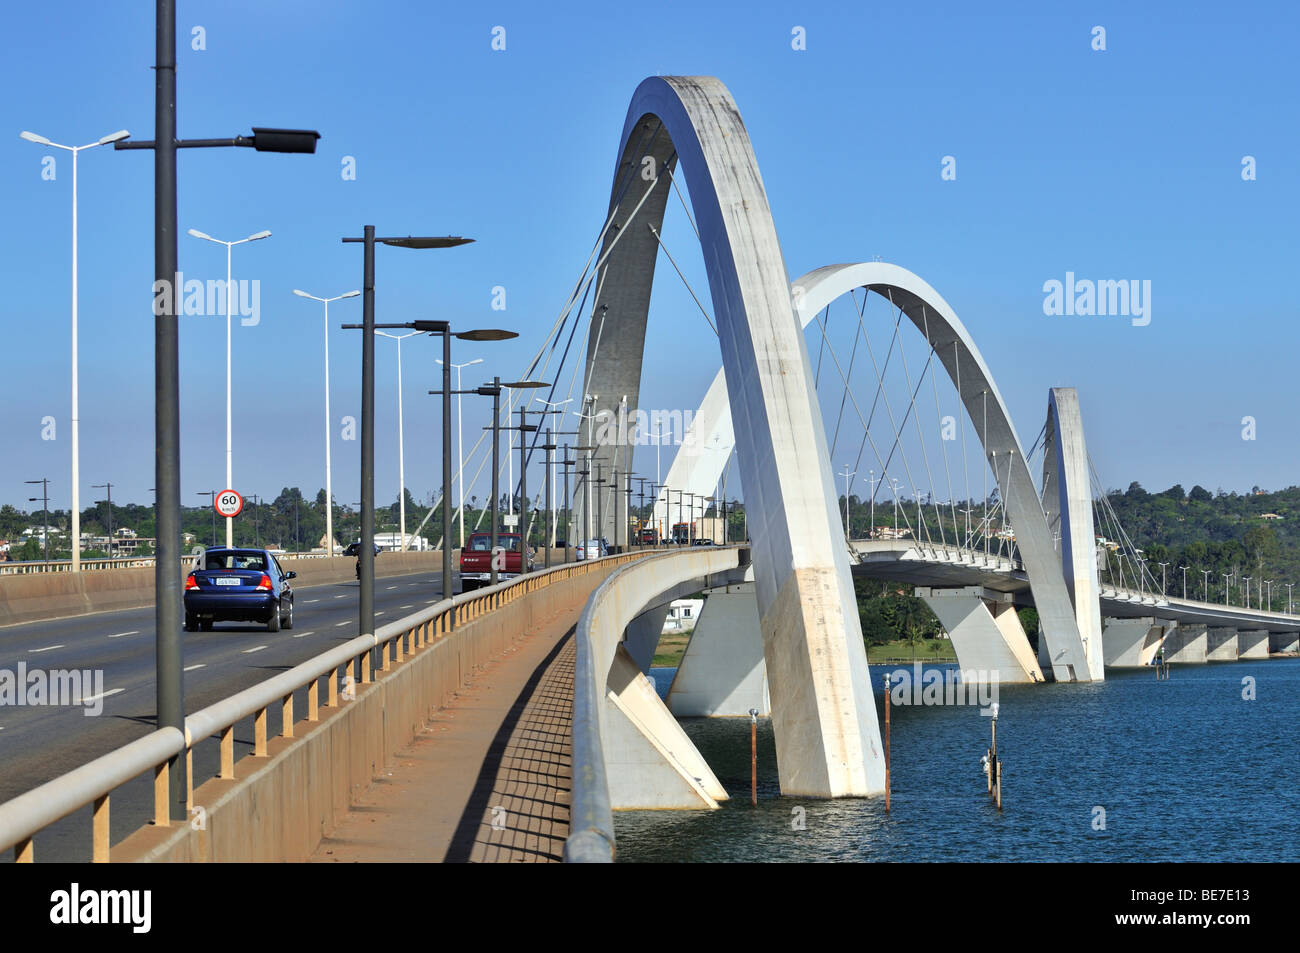 Juscelino Kubitschek Bridge, l'architecte Oscar Niemeyer, Brasilia, Distrito Federal State, Brésil, Amérique du Sud Banque D'Images